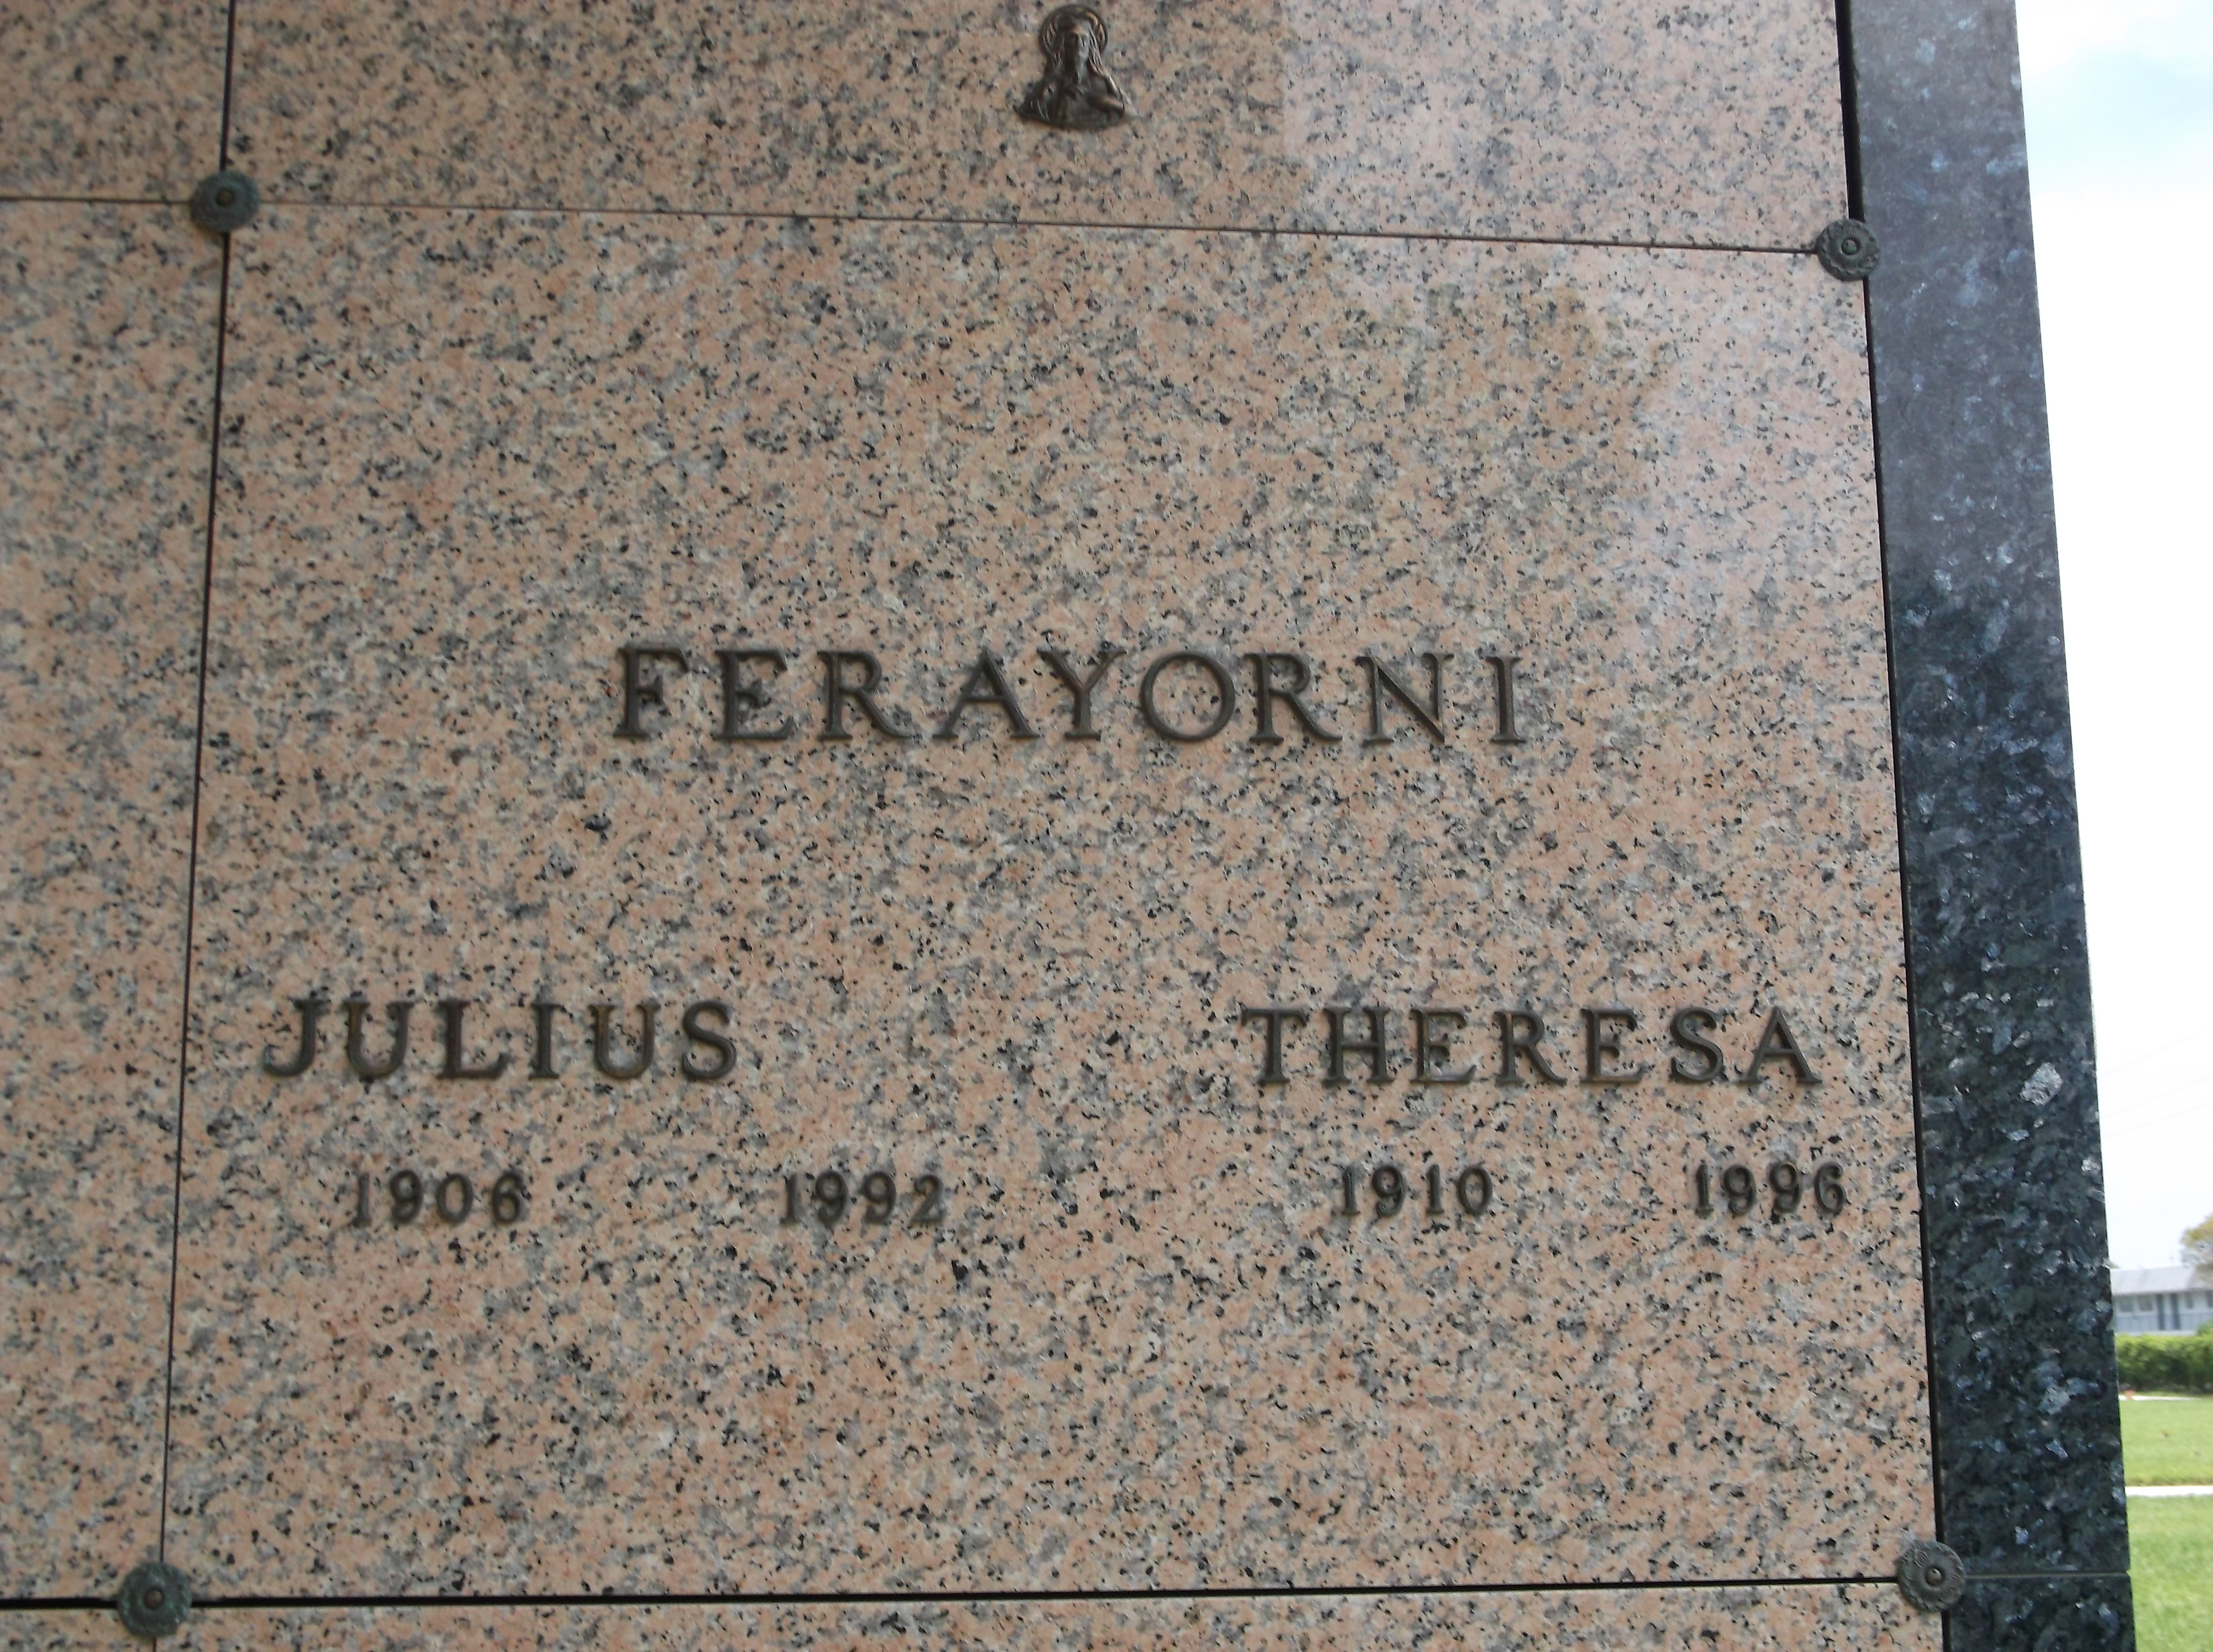 Julius Ferayorni